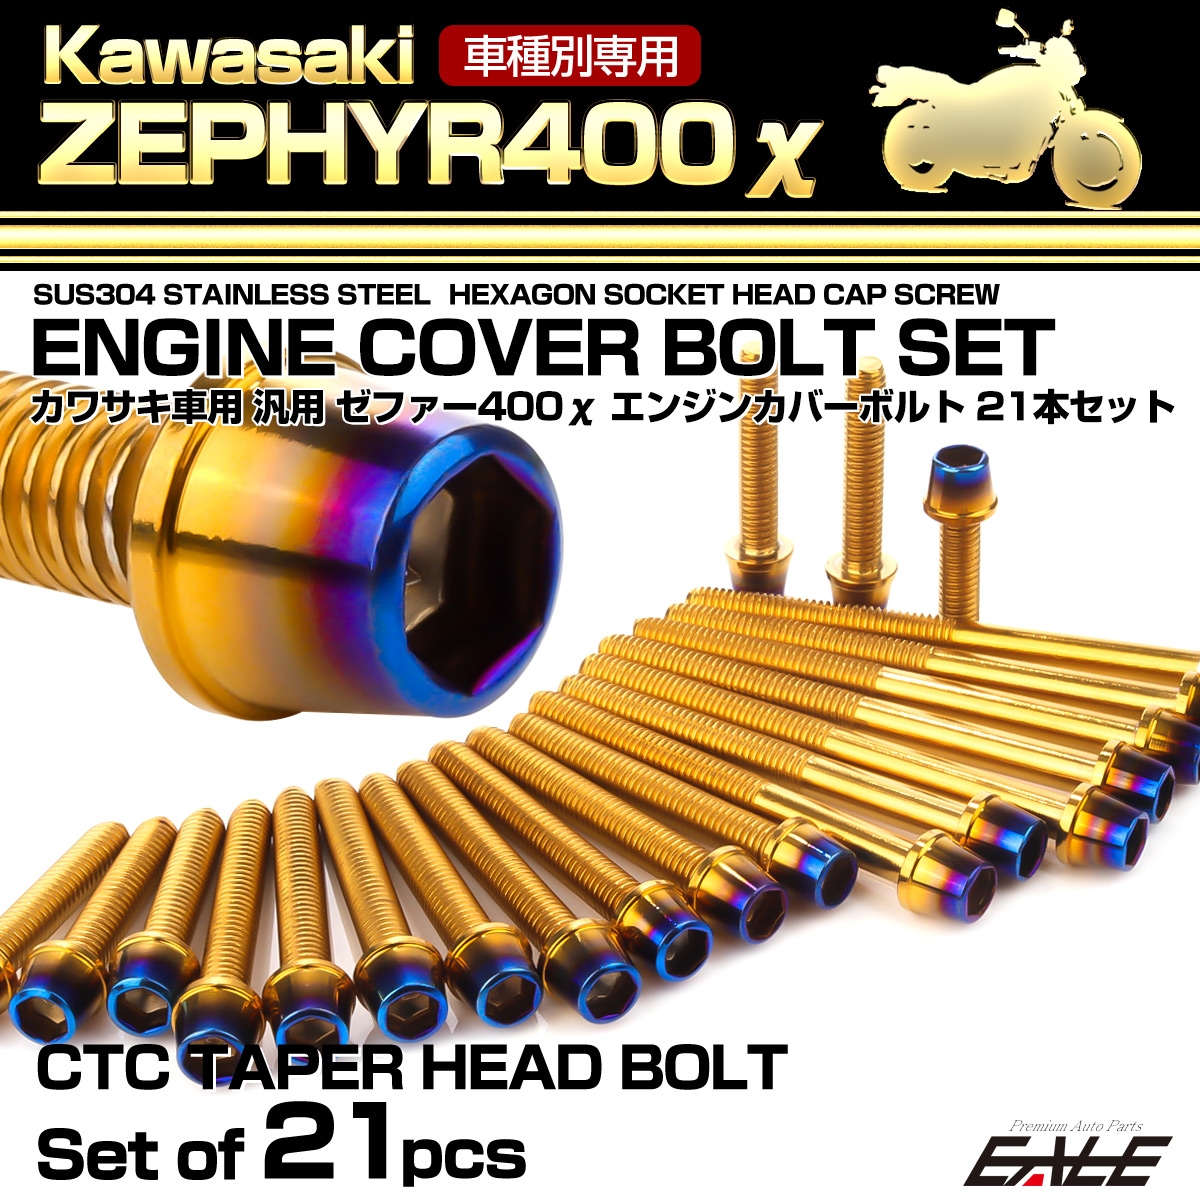 ゼファー400 エンジンカバーボルト 19本セット カワサキ車用 ZEPHYR400 